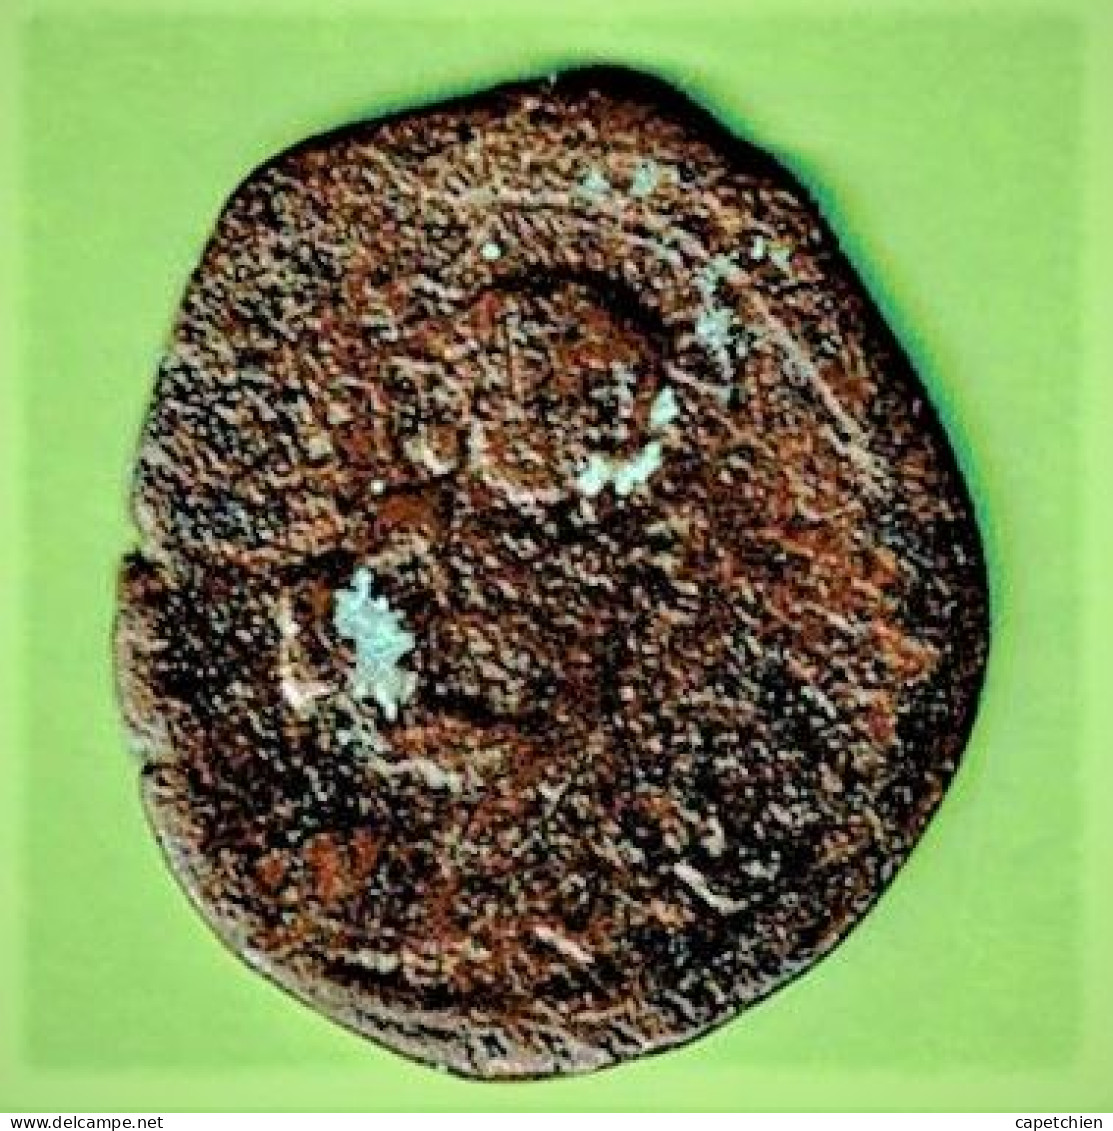 MONNAIE BYZANTINE A IDENTIFIER / 9.31g /  Max 28.95 Mm - Byzantinische Münzen